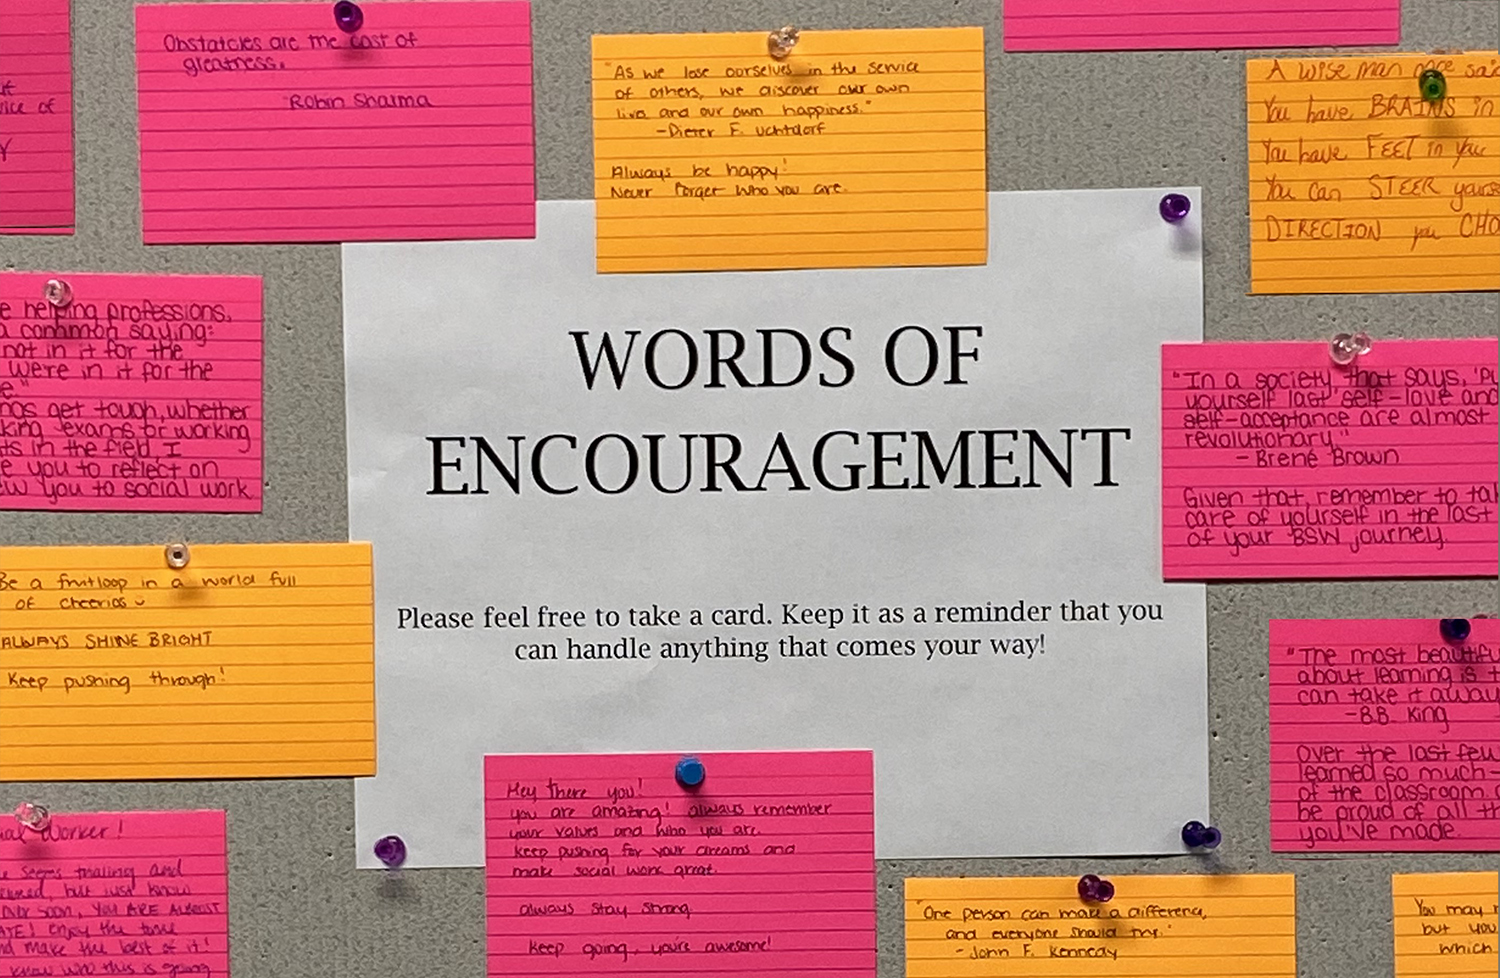 Words of encouragement